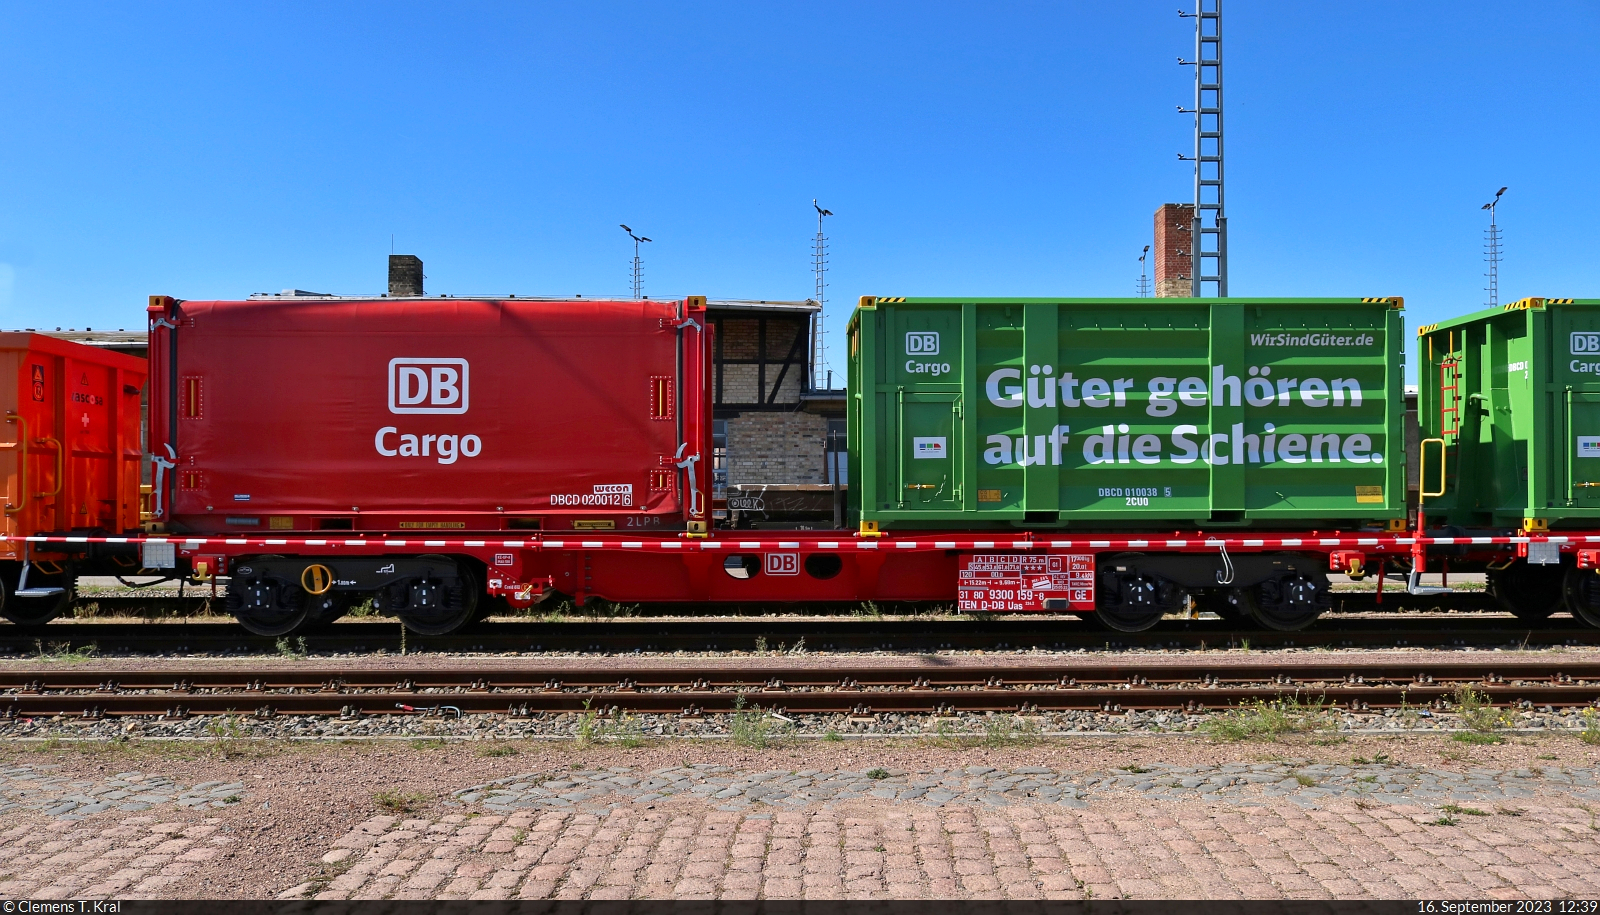 Multifunktionaler und modularer Güterwagen (m²-Wagen) mit der Bezeichnung  Uas <sup>224.2</sup>  (31 80 9300 159-8 D-DB) beim Tag der Schiene in der Zugbildungsanlage (ZBA) Halle (Saale).

🧰 DB Cargo
🕓 16.9.2023 | 12:39 Uhr